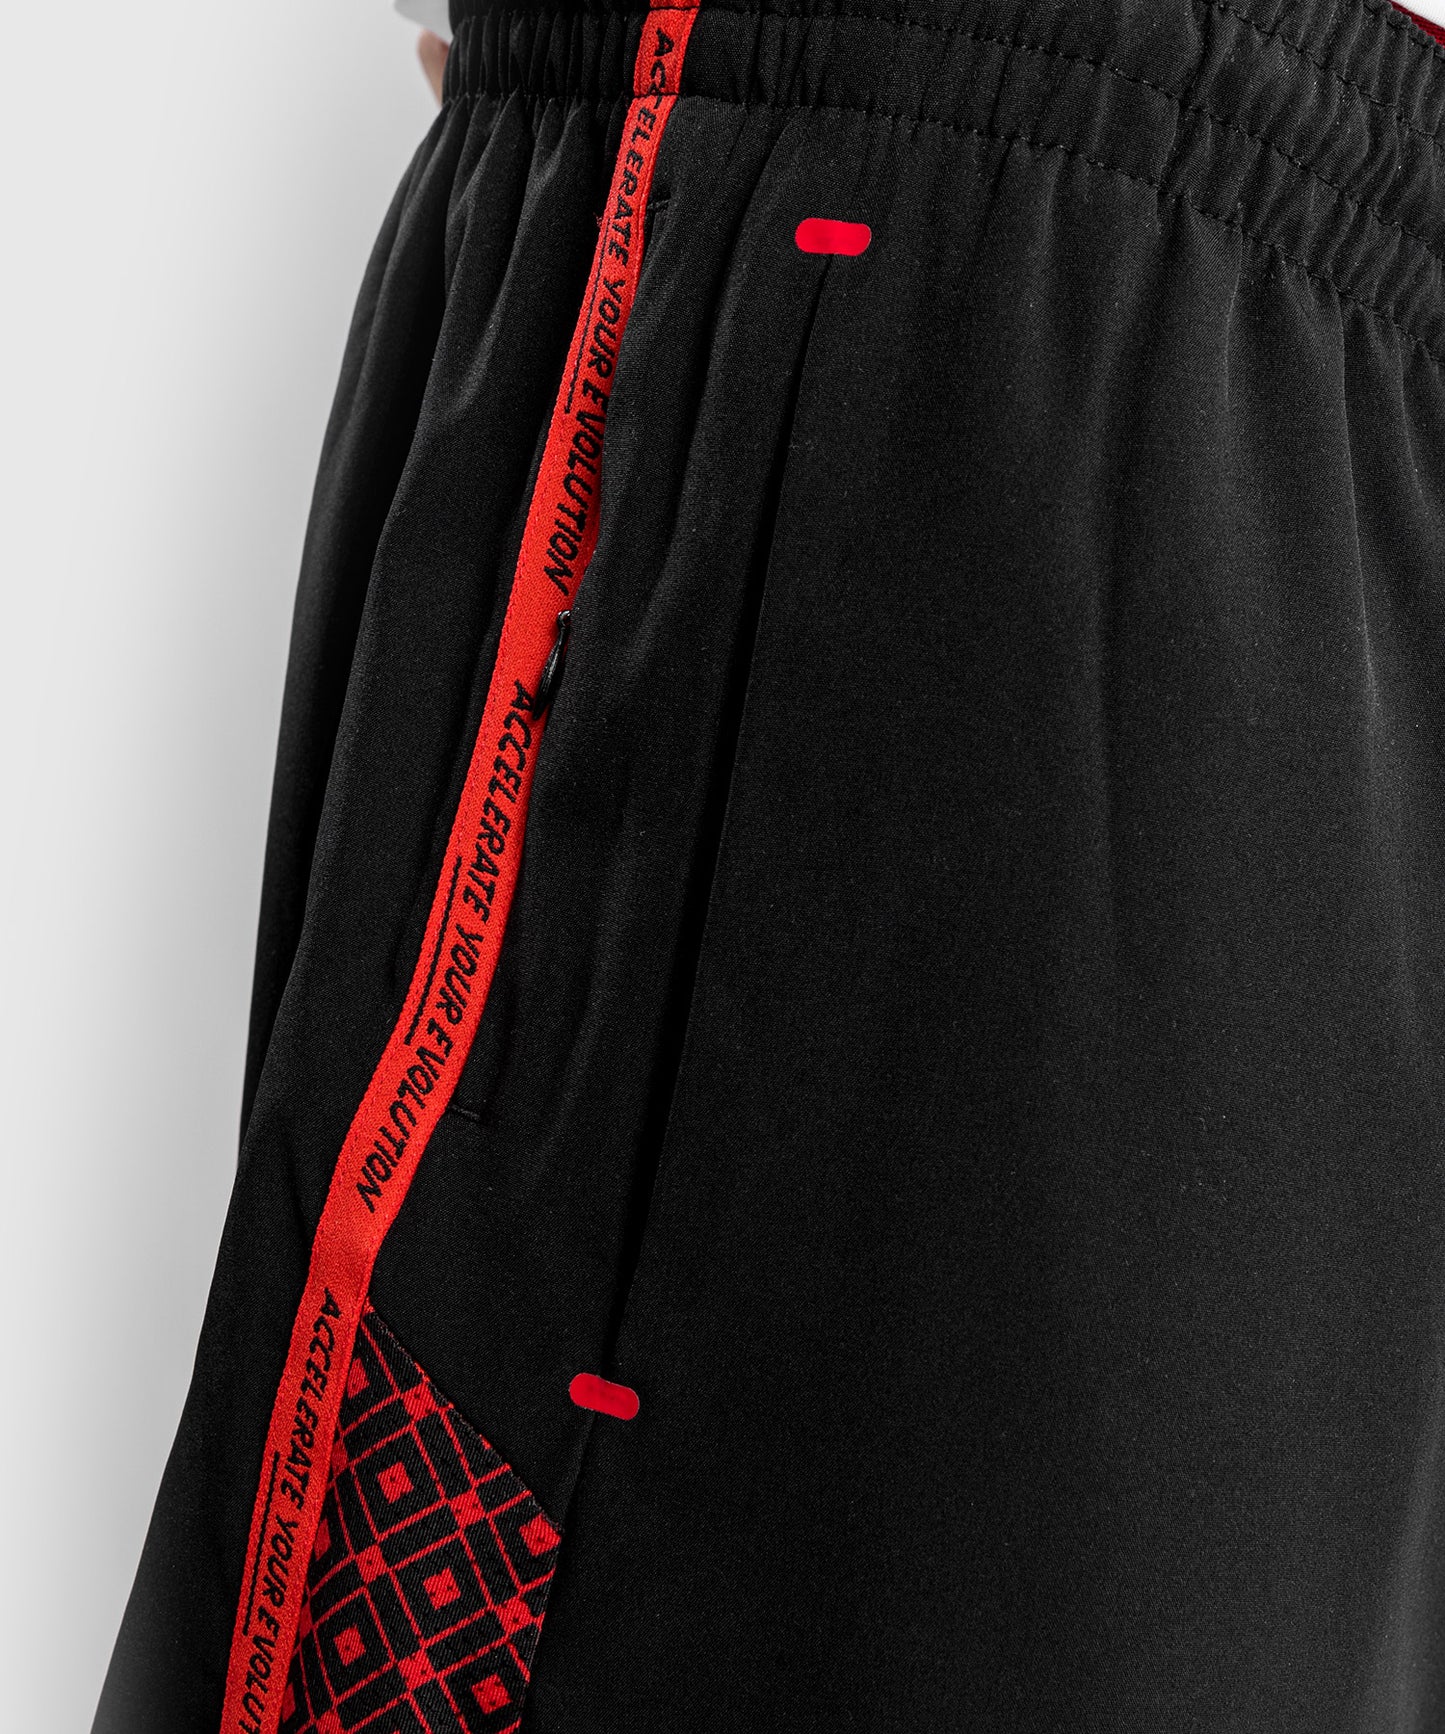 Pantalones cortos de entrenamiento Venum UFC Performance Institute - Negro/Rojo